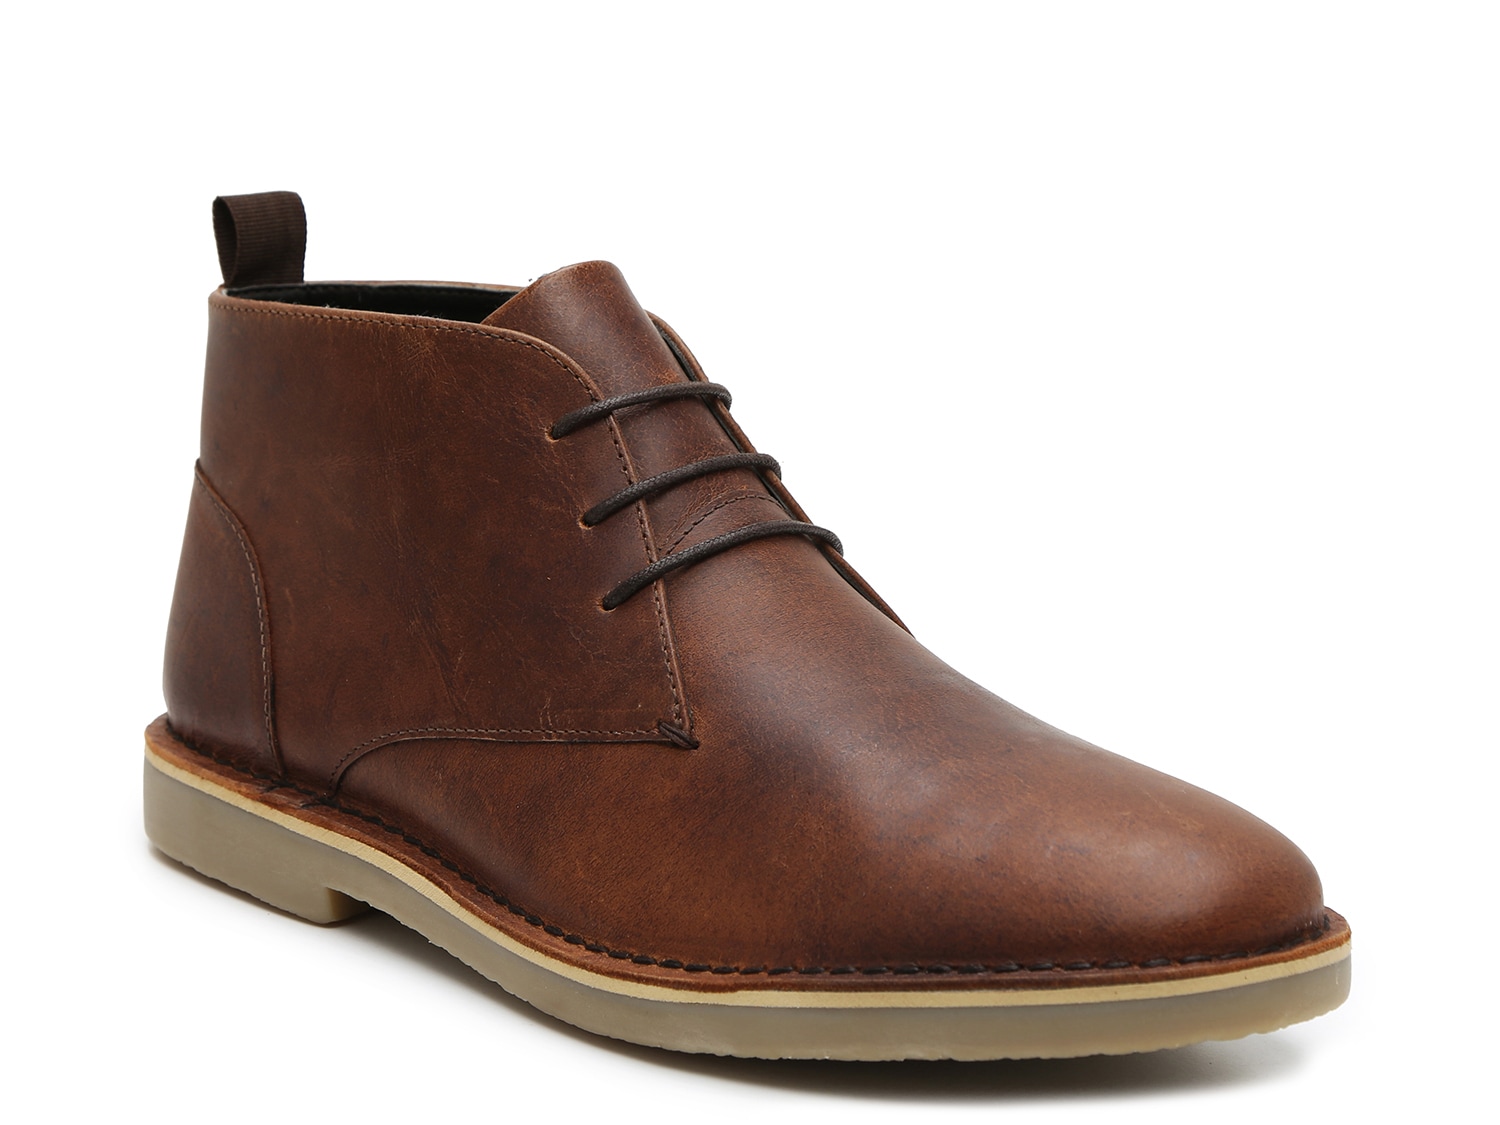 Men's Beige Casual Boots | DSW